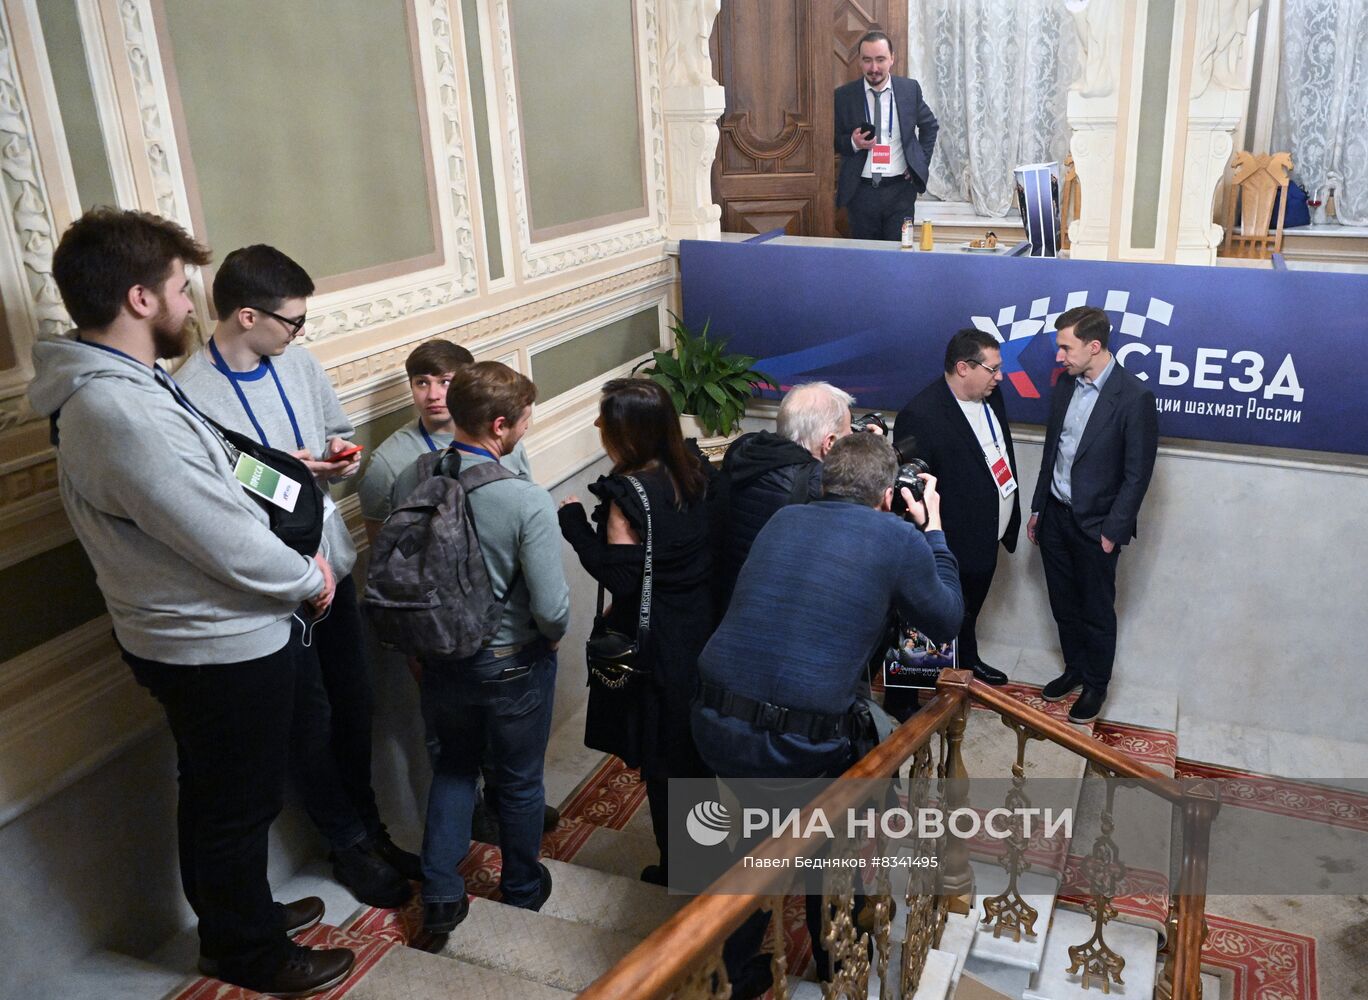 Андрей Филатов выбран президентом Федерации шахмат России